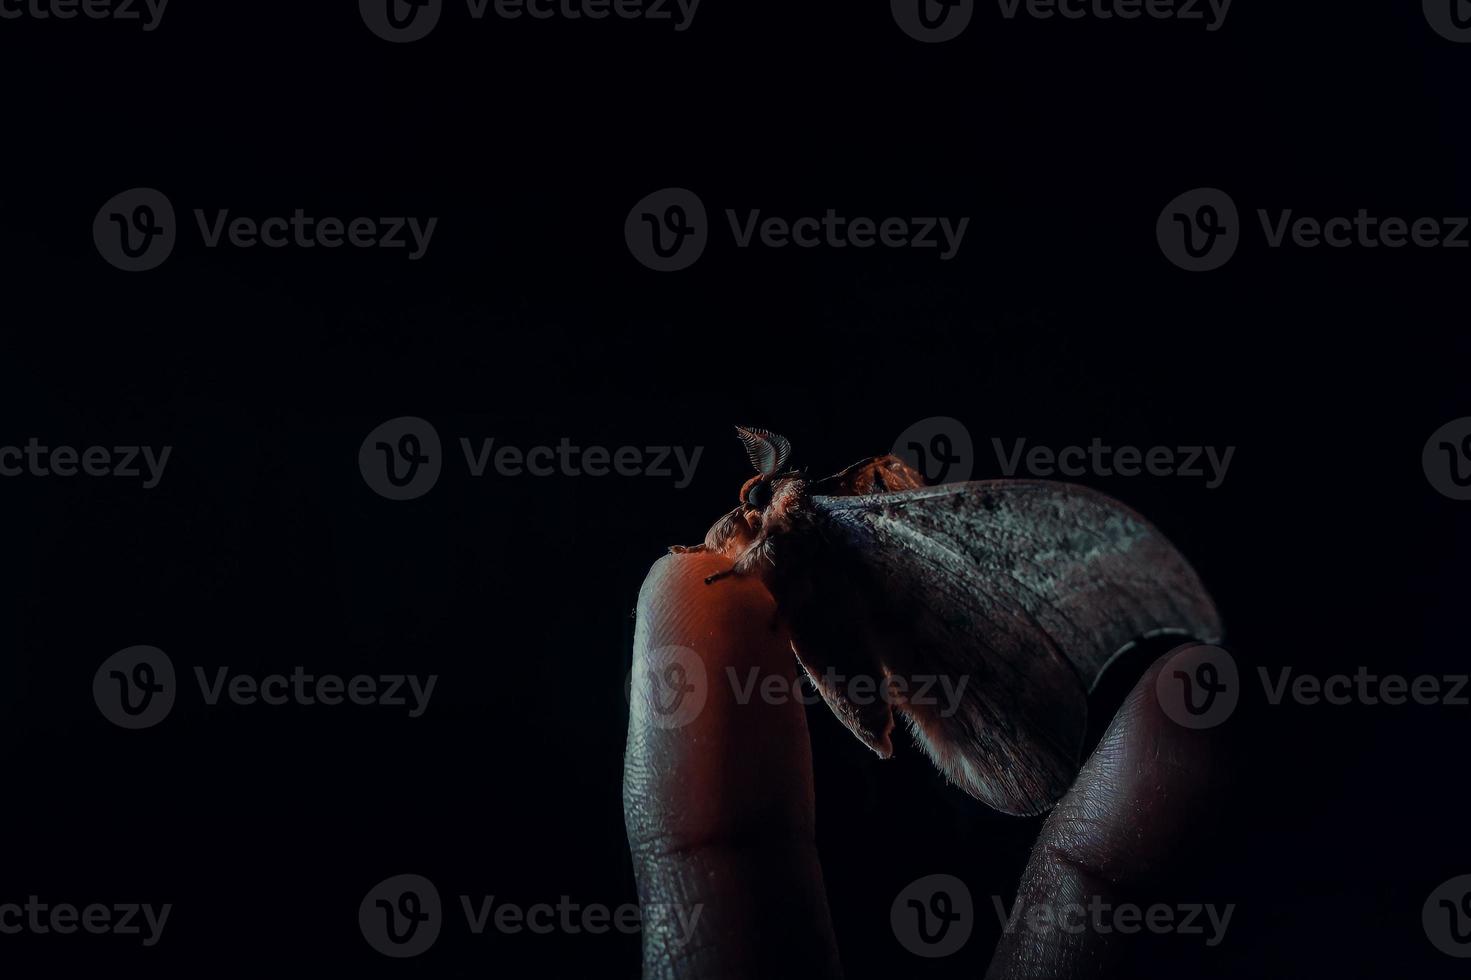 foto av en mal som vilar på en mans finger, med konceptet av ett lågmält foto så att det ger ett starkt och dramatiskt intryck. svart och mörk bakgrund.